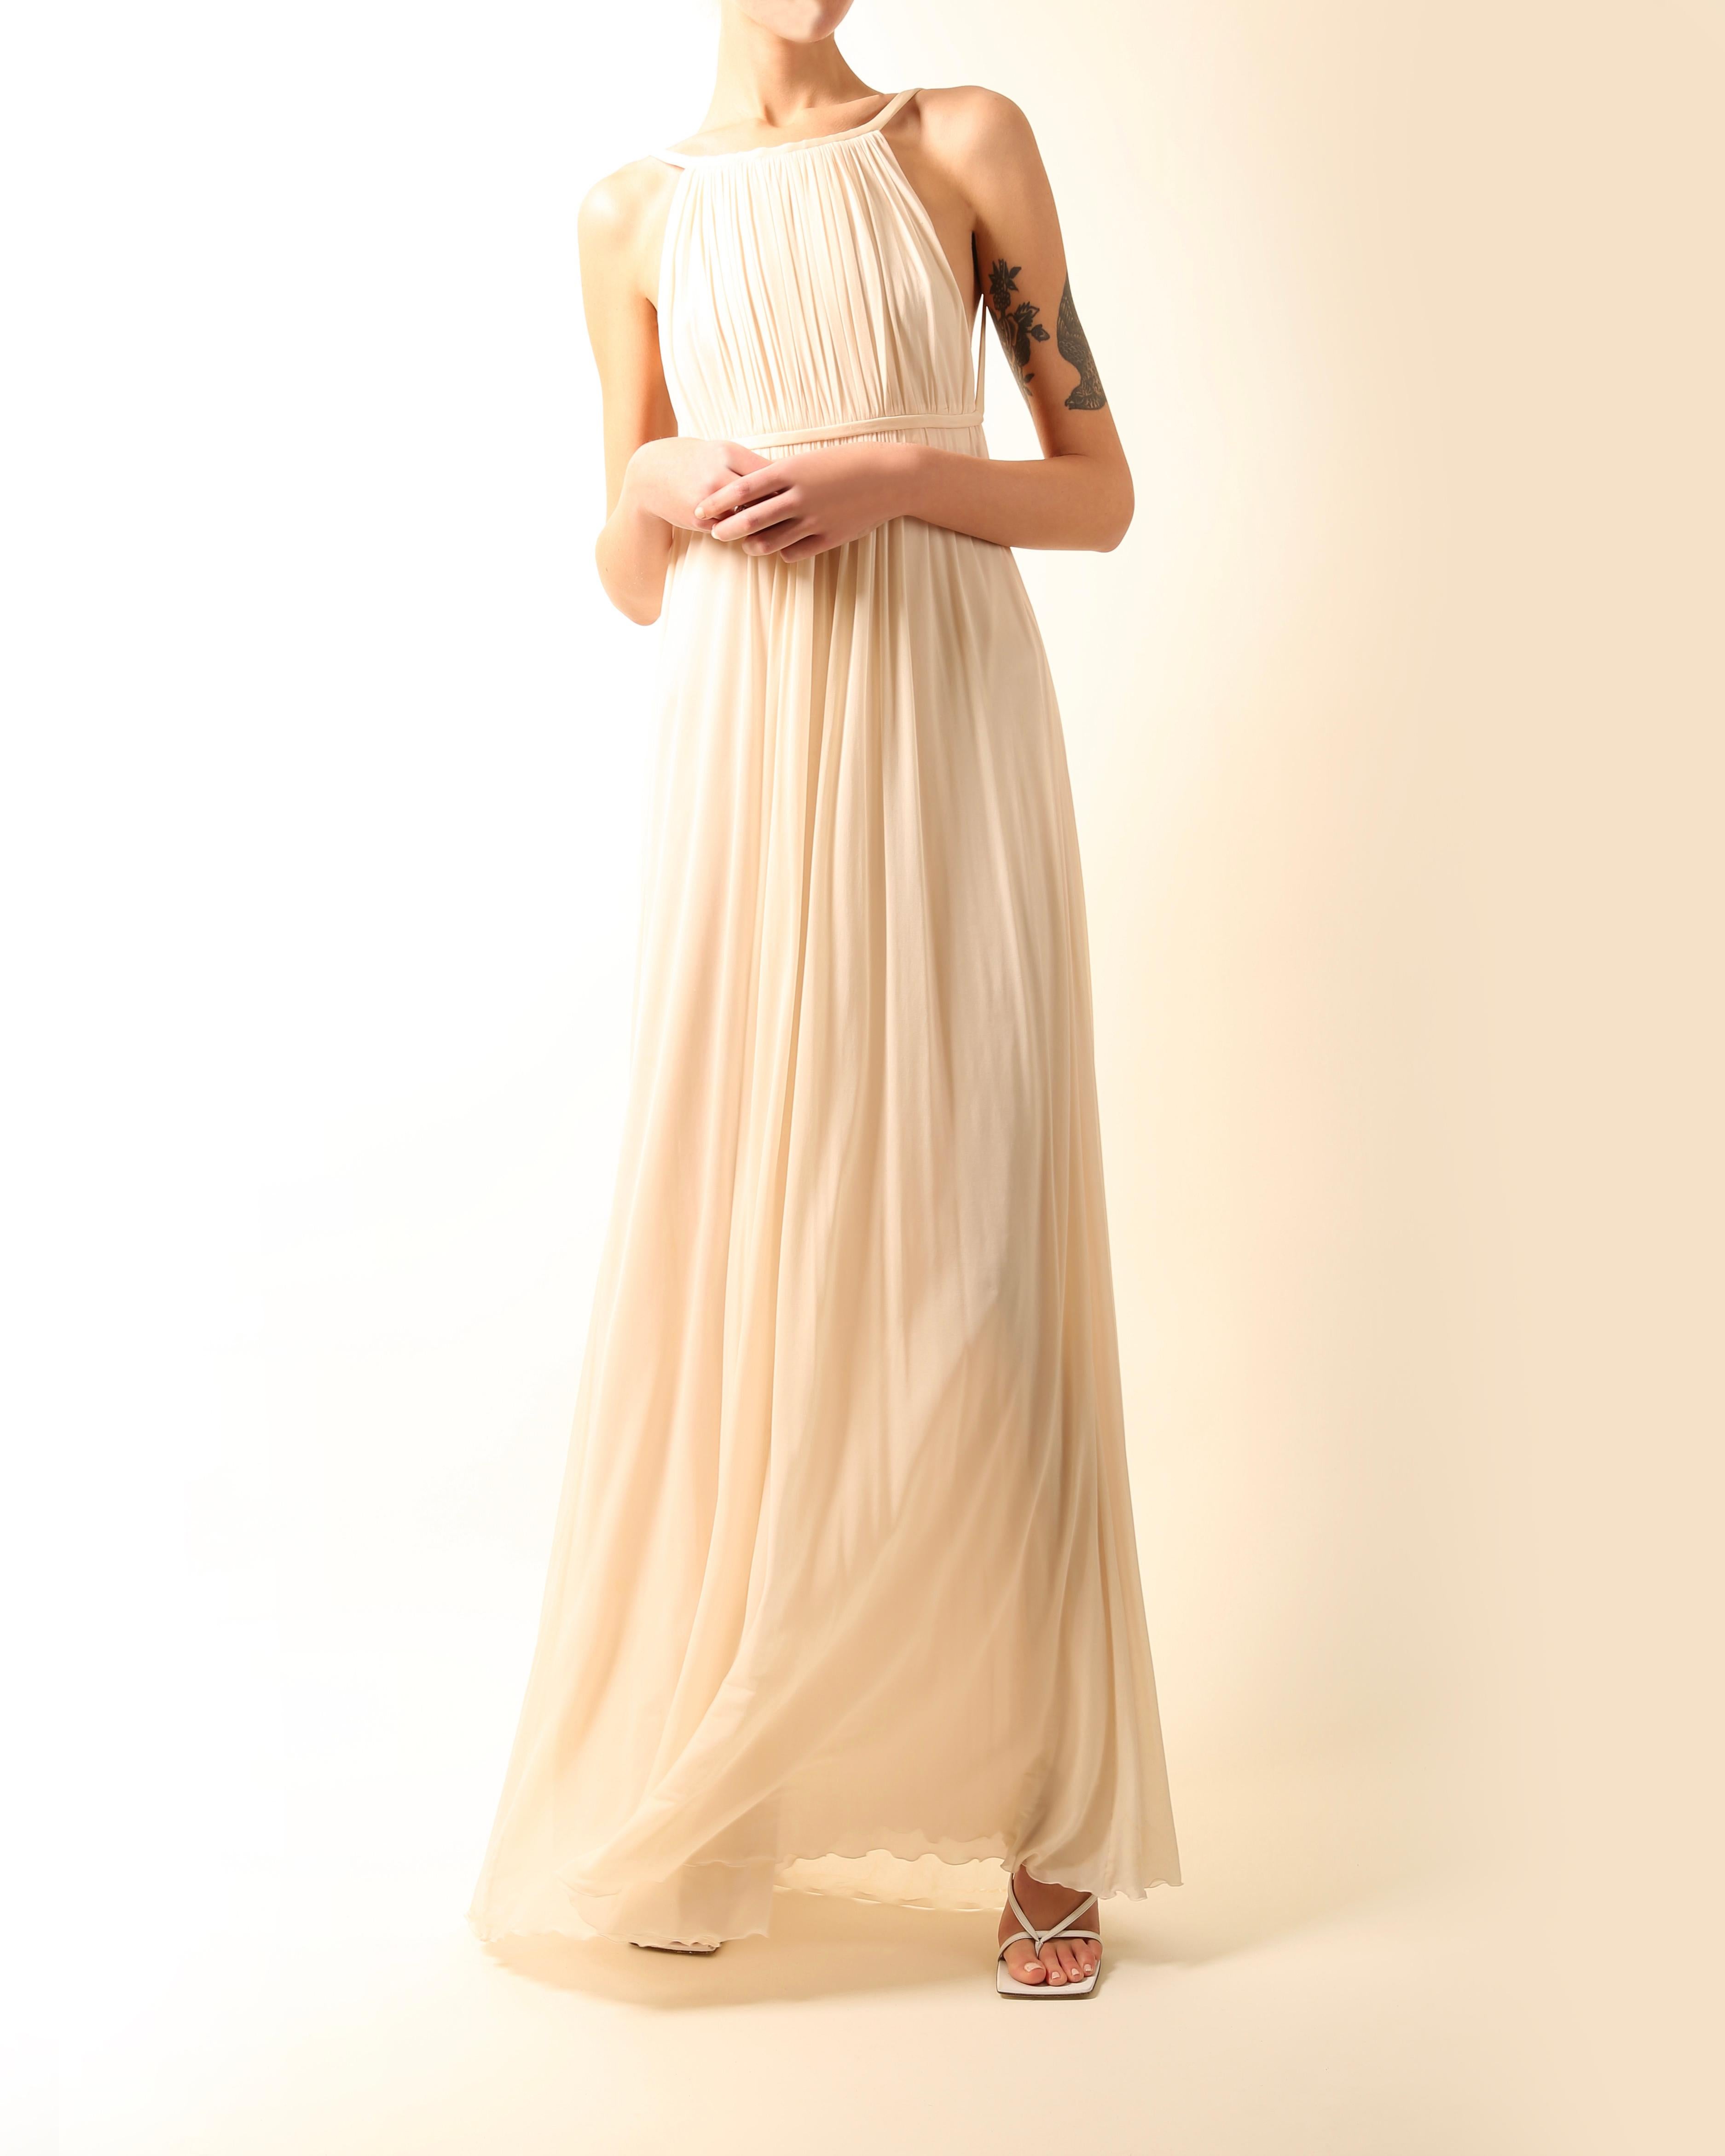 Robe de mariée longue dos nu Halston 09 plissée crème ivoire de style grec, taille 42 2